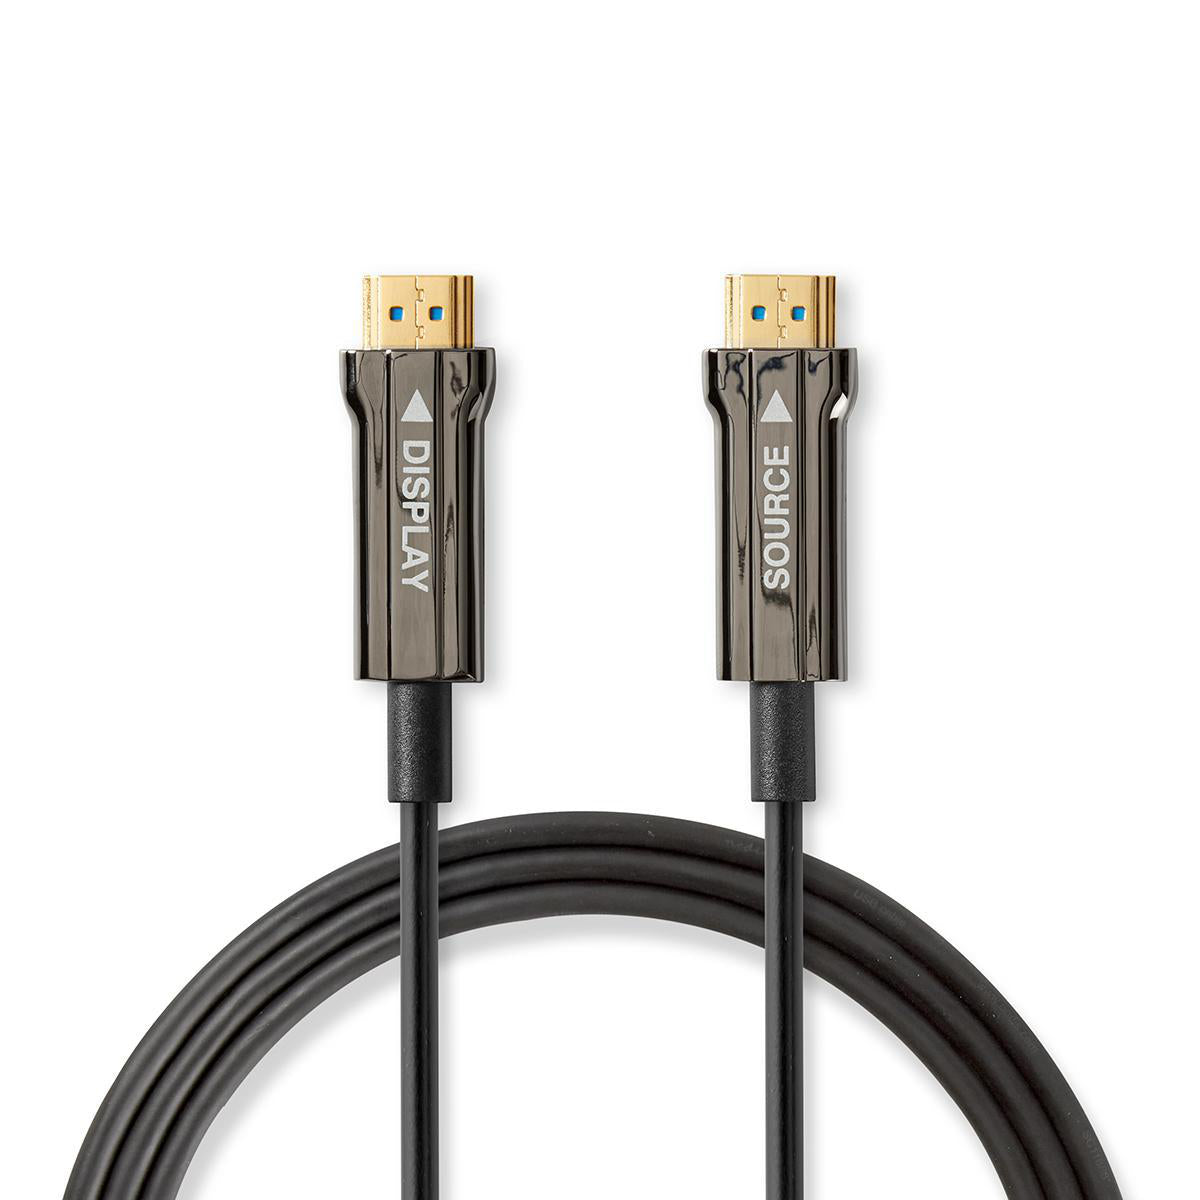 Aktive Optische Ultra High Speed HDMI-Kabel mit Ethernet | HDMI™ Stecker | HDMI™ Stecker | 8K@60Hz | 48 Gbps | 20.0 m | Rund | PVC | Schwarz | Kartonverpackung